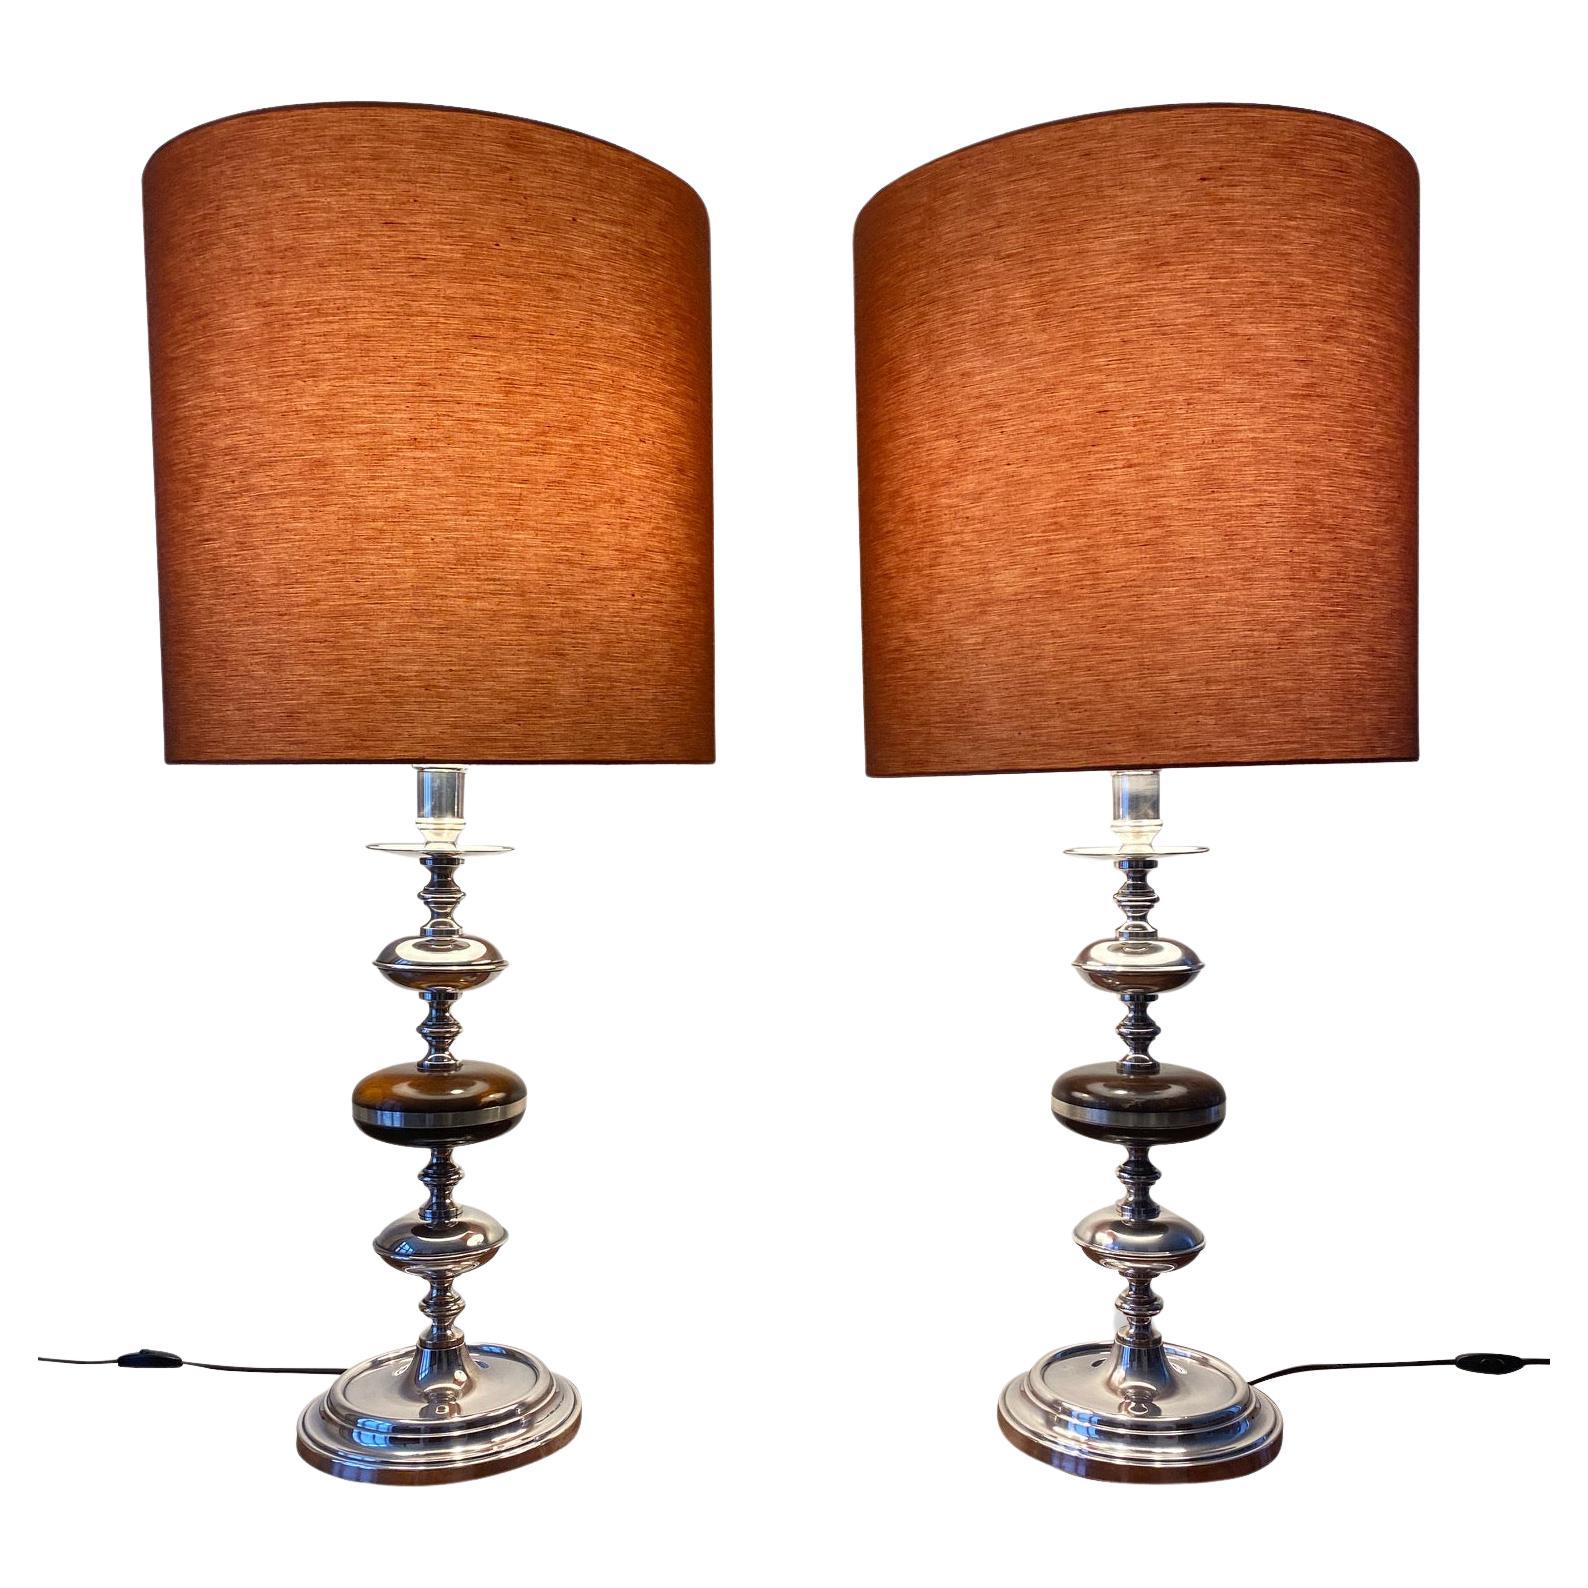 Paar hohe silberne Kandelaber-Tischlampen mit orangefarbenen Farbschirmen